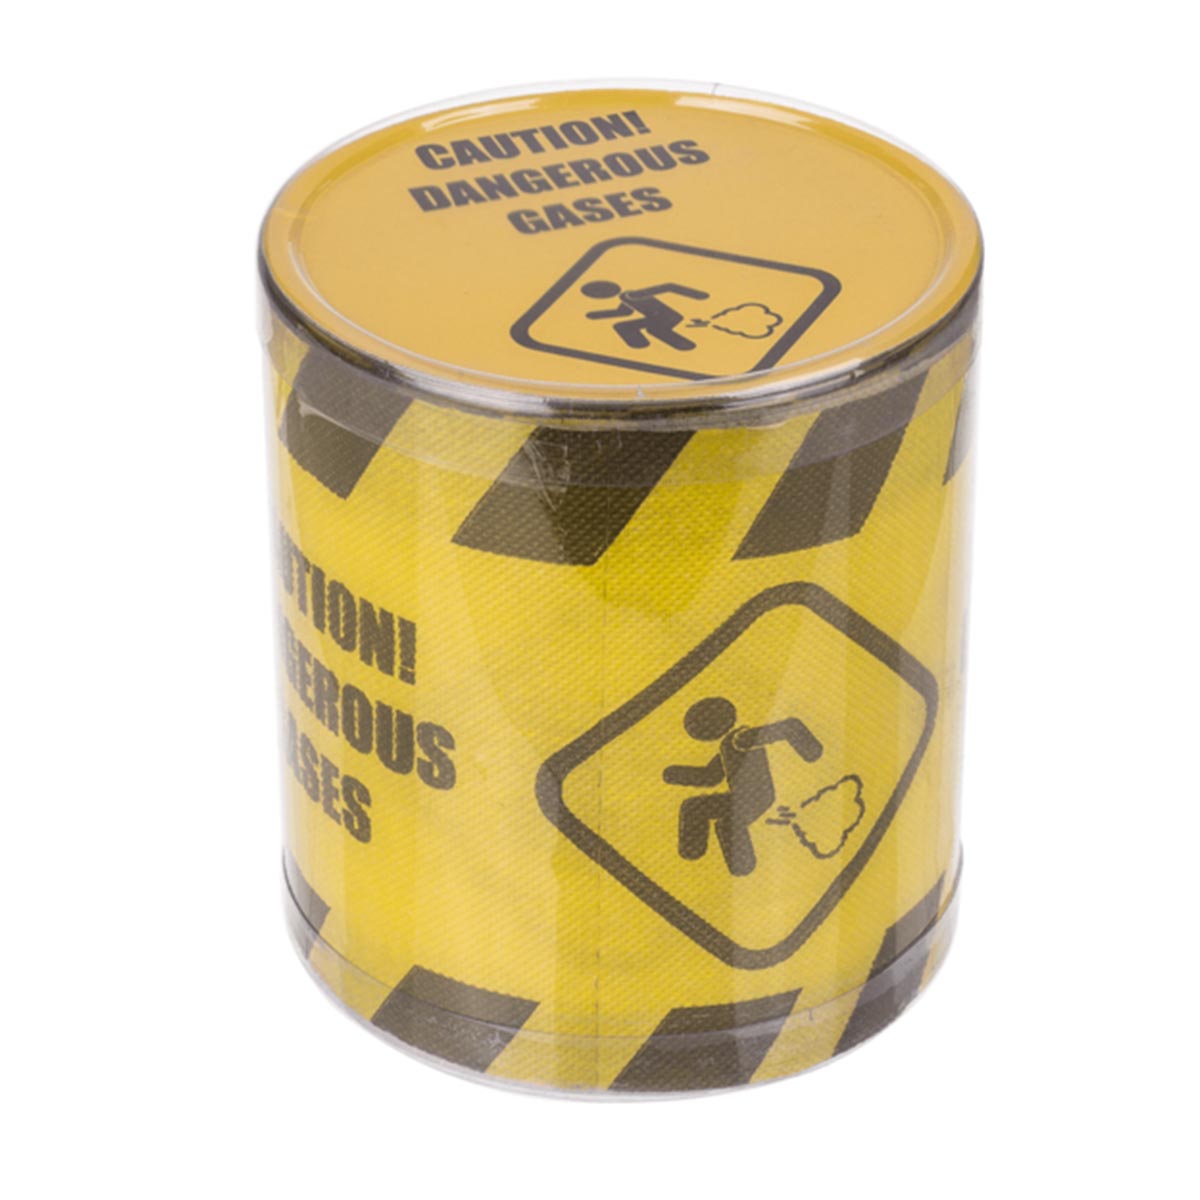 Toalettpapper Caution! Dangerous gases